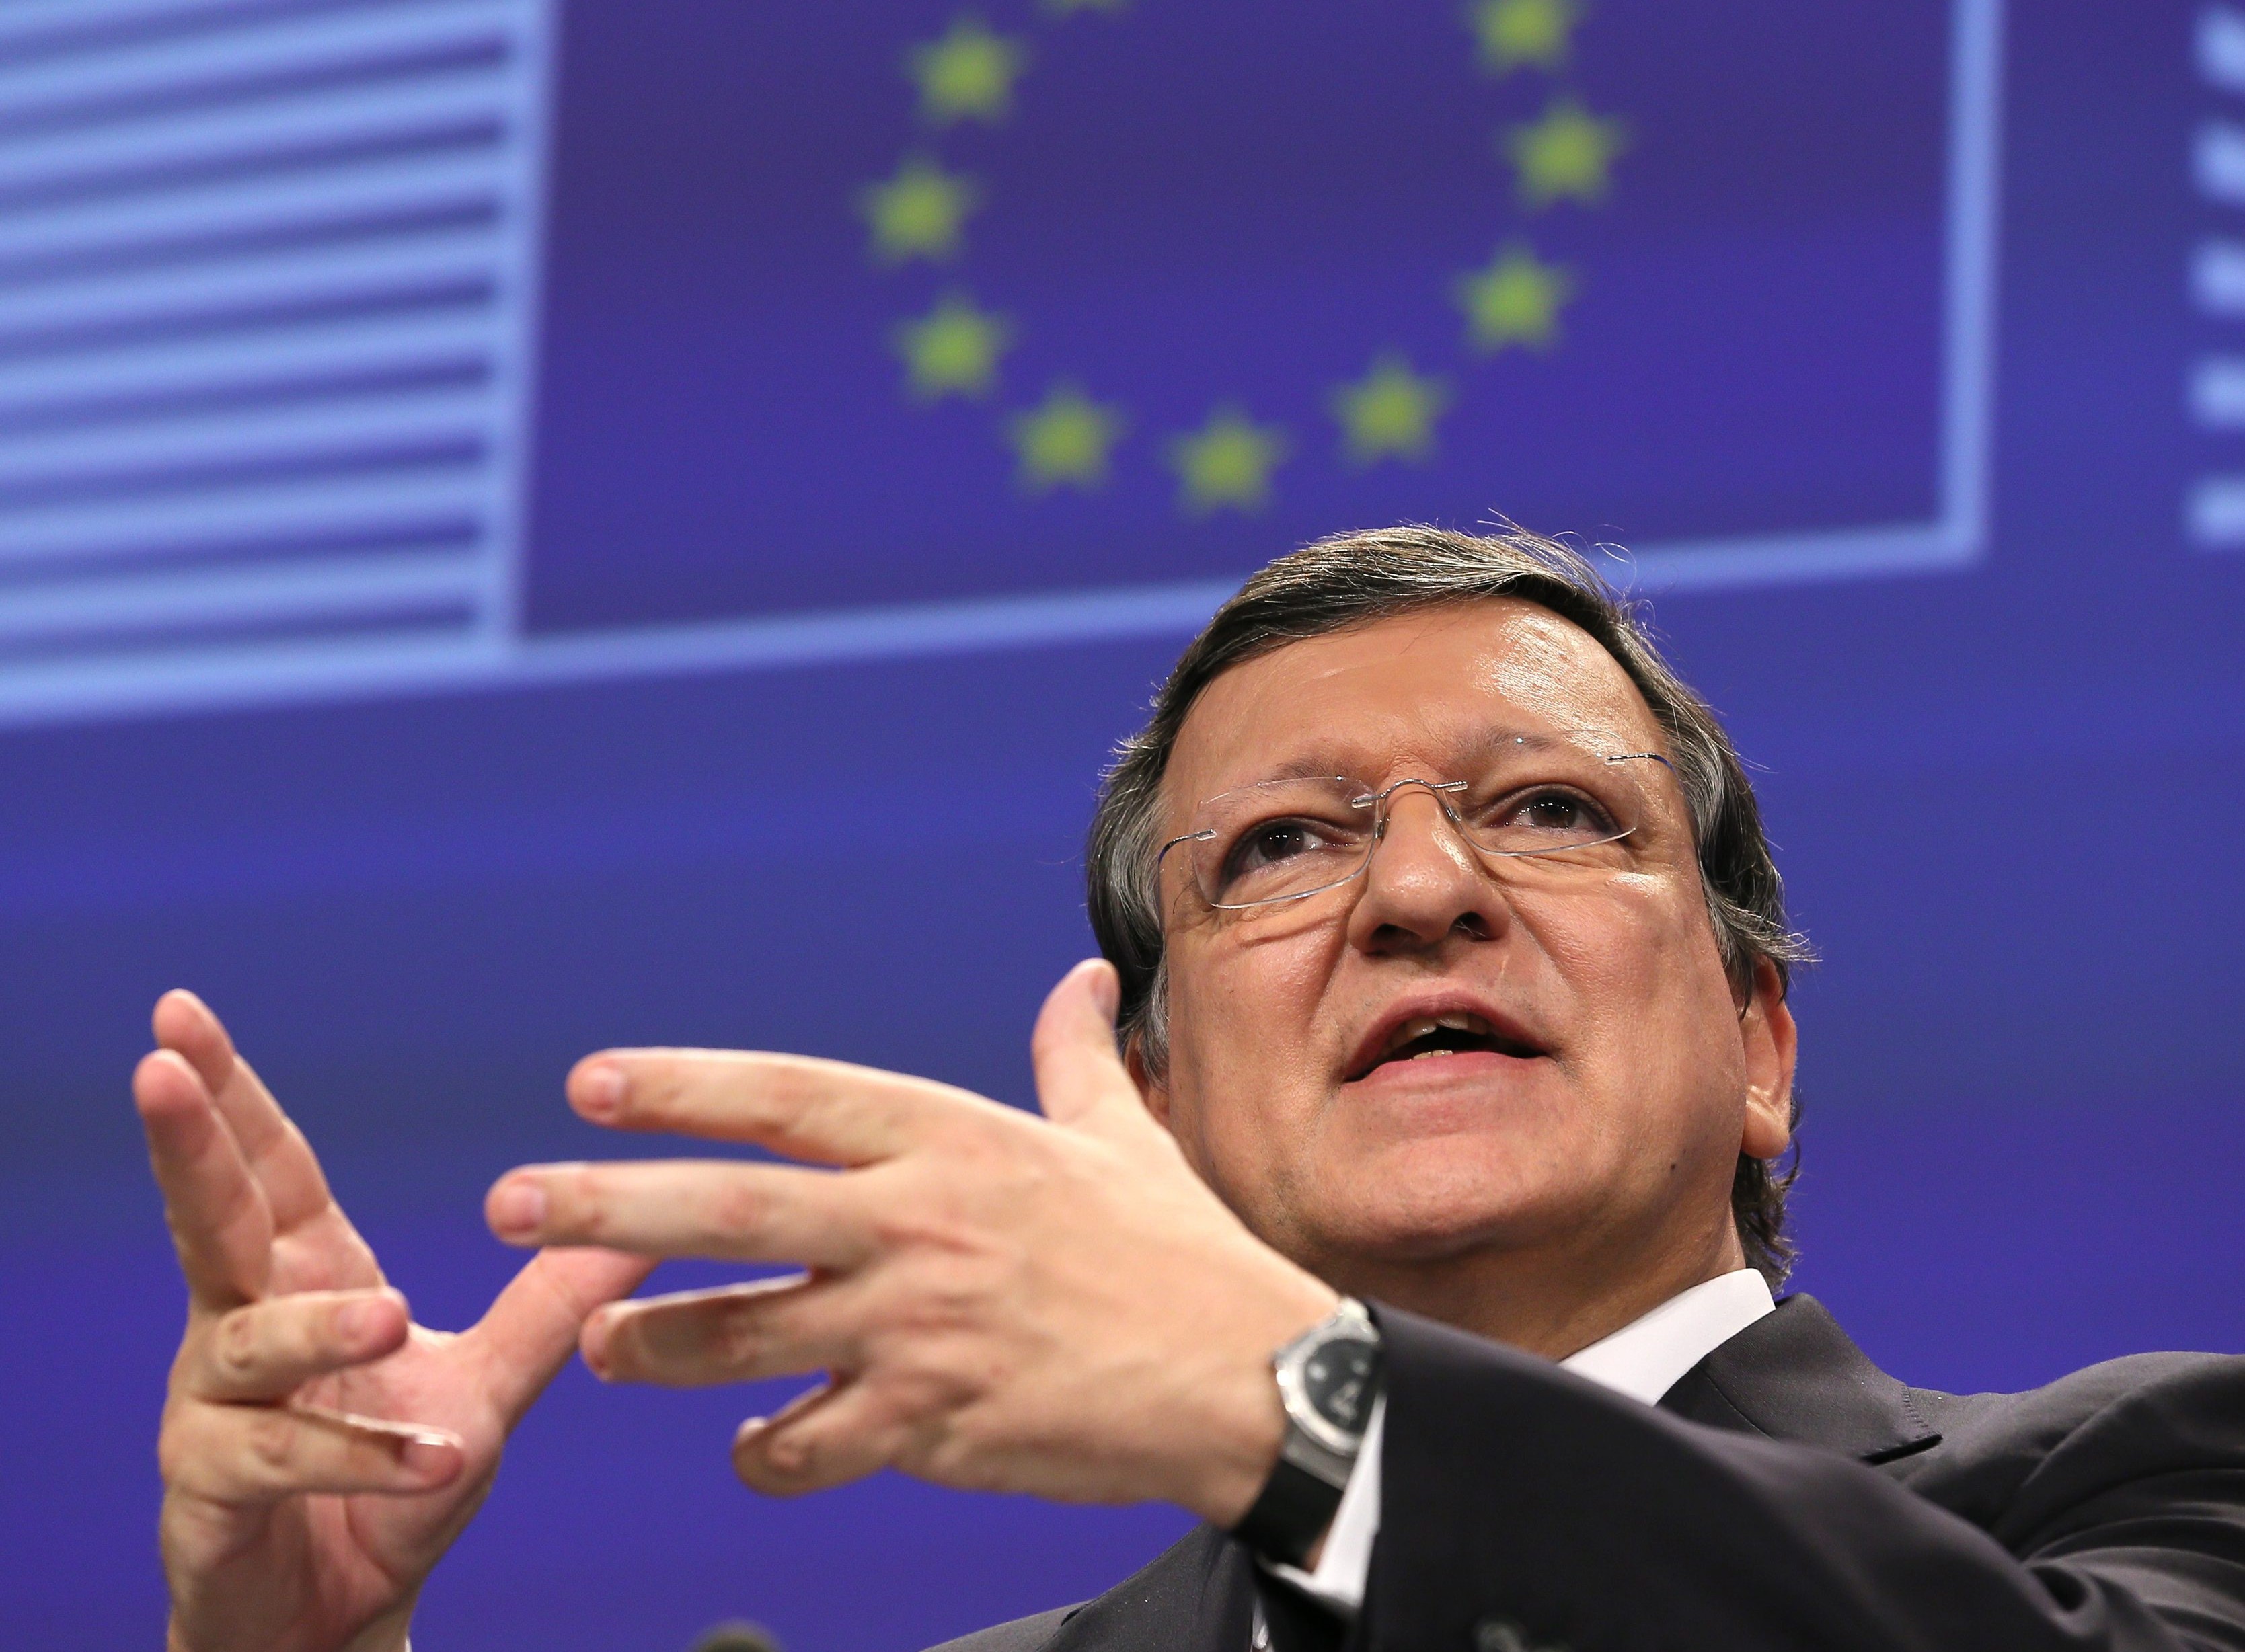 De kans op een vertrek van Griekenland uit de eurozone is groter dan ooit. Maar áls dat gebeurt, is dat niet langer een bedreiging voor die eurozone. Dat zei oud-voorzitter van de Europese Commissie José Manuel Barroso dinsdag op een bijeenkomst in Rotterdam. Barroso sprak op uitnodiging van ABN Amro. Woensdag overleggen de Europese ministers van Financiën over de Griekse kwestie. Barroso -- tot november vorig jaar voorman van de Europese Commissie -- denkt dat een compromis met Griekenland mogelijk is, maar hij ziet liever geen compromis dan een slecht compromis. "De geloofwaardigheid van de EU staat op het spel", waarschuwde hij. Als Griekenland zich niet aan de regels houdt, is het hek van de dam en zullen ook andere EU-landen versoepeling willen of zich niet aan afspraken gebonden voelen. Meerderheid Grieken wil euro Barroso erkende dat de Grieken zwaar te lijden hebben van de bezuinigingsmaatregelen, maar dit is voor hem geen reden om toe te geven aan de Griekse wens tot schuldenverlichting, op kosten van de rest van de EU. "Waarom zouden de nog armere Slowaken de Grieken moeten vergeven? Verkiezingsbeloftes moeten niet door anderen betaald worden." Maar volgens hem heeft de nieuwe Griekse regering niet het kiezersmandaat om afscheid te nemen van de euro. "De meerderheid van de Grieken wil de euro houden." Eurozone veerkrachtig Barroso is inmiddels niet bang meer voor de gevolgen van een Grexit. Het gevaar van 'besmetting' naar andere Zuid-Europese landen is geweken, zei hij. De reacties van de financiële markten op de Griekse verkiezingen steunen hem in die gedachte. "De eurozone heeft zijn veerkracht laten zien." Hij noemde het hoopvol dat juist de landen, die er tijdens het hoogtepunt van de eurocrisis er het slechtst voorstonden -- Ierland, Spanje, Portugal -- nu de hoogste groeiverwachtingen binnen de EU hebben. Hij is mede daarom optimistisch en vindt het jammer dat zovelen nog 'de intellectuele glamour van het pessimisme' omarmen. Politieke situatie verslechtert Maar "terwijl de economische situatie verbetert, verslechtert de politieke situatie". Hij wees daarbij op de toenemende spanningen tussen landen als Japan, China en Korea, en uiteraard op crisis in Oekraïne. Barroso vindt Poetin een moeilijk te peilen man. Hij heeft hem zo'n 25 keer ontmoet en signaleerde dat hij zich volslagen anders in klein gezelschap gedroeg dan in groot gezelschap. "Niemand weet wat hij wil. Je kunt het beste kijken naar de feiten. Hij doet het omgekeerde van wat hij zegt. Hij wil destabilisatie, maar de vraag is hoe ver hij wil gaan. Maar als je als EU niets doet, is dan een aanmoediging voor Rusland om door te gaan." Ook andere landen rondom Rusland lopen dan kans om een deel van hun soevereiniteit te verliezen, aldus Barroso.